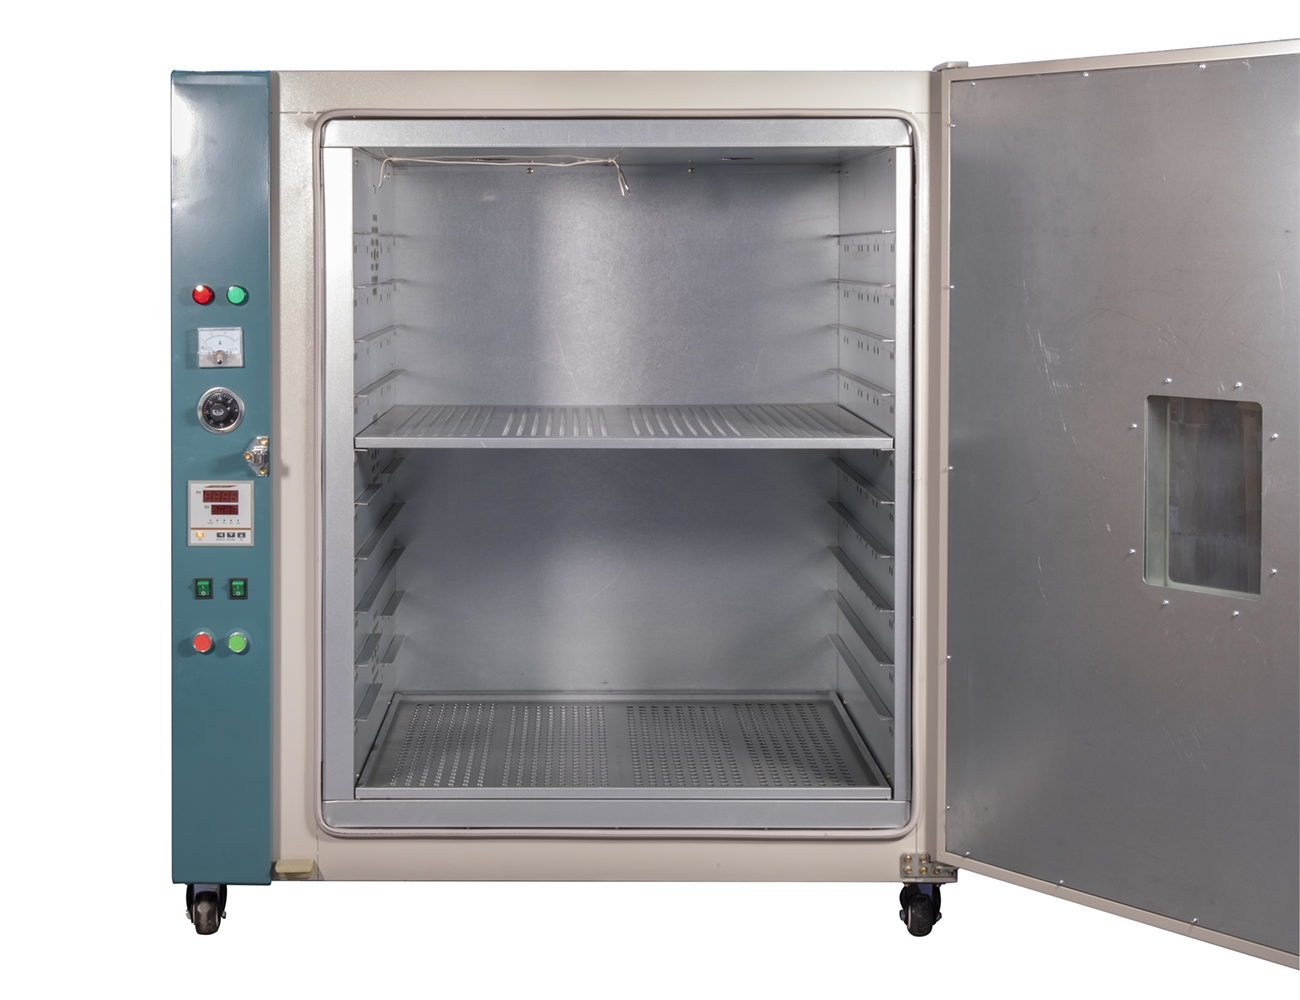 Priemyselná veľkoobjemová sušiaca / sterilizačná pec 101-4 380V, 0-300 ° C 600L